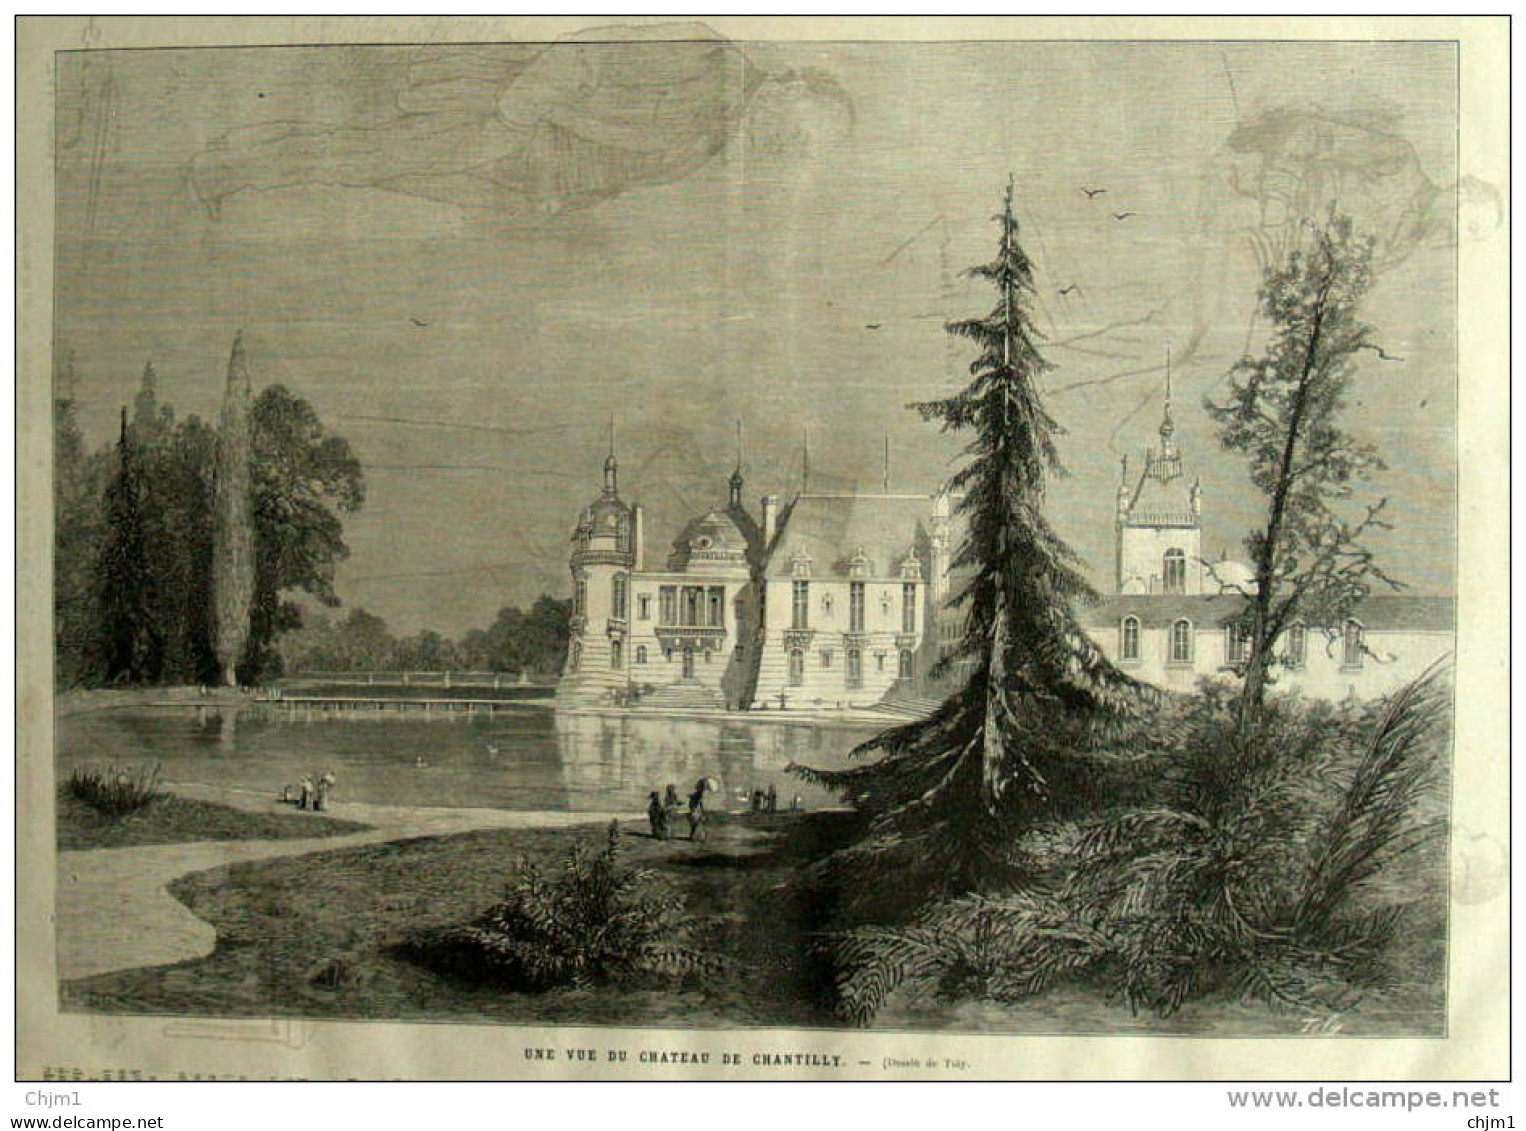 Une Vue De Château De Chantilly - Dessin De Toly - Page Original 1882 - Historical Documents